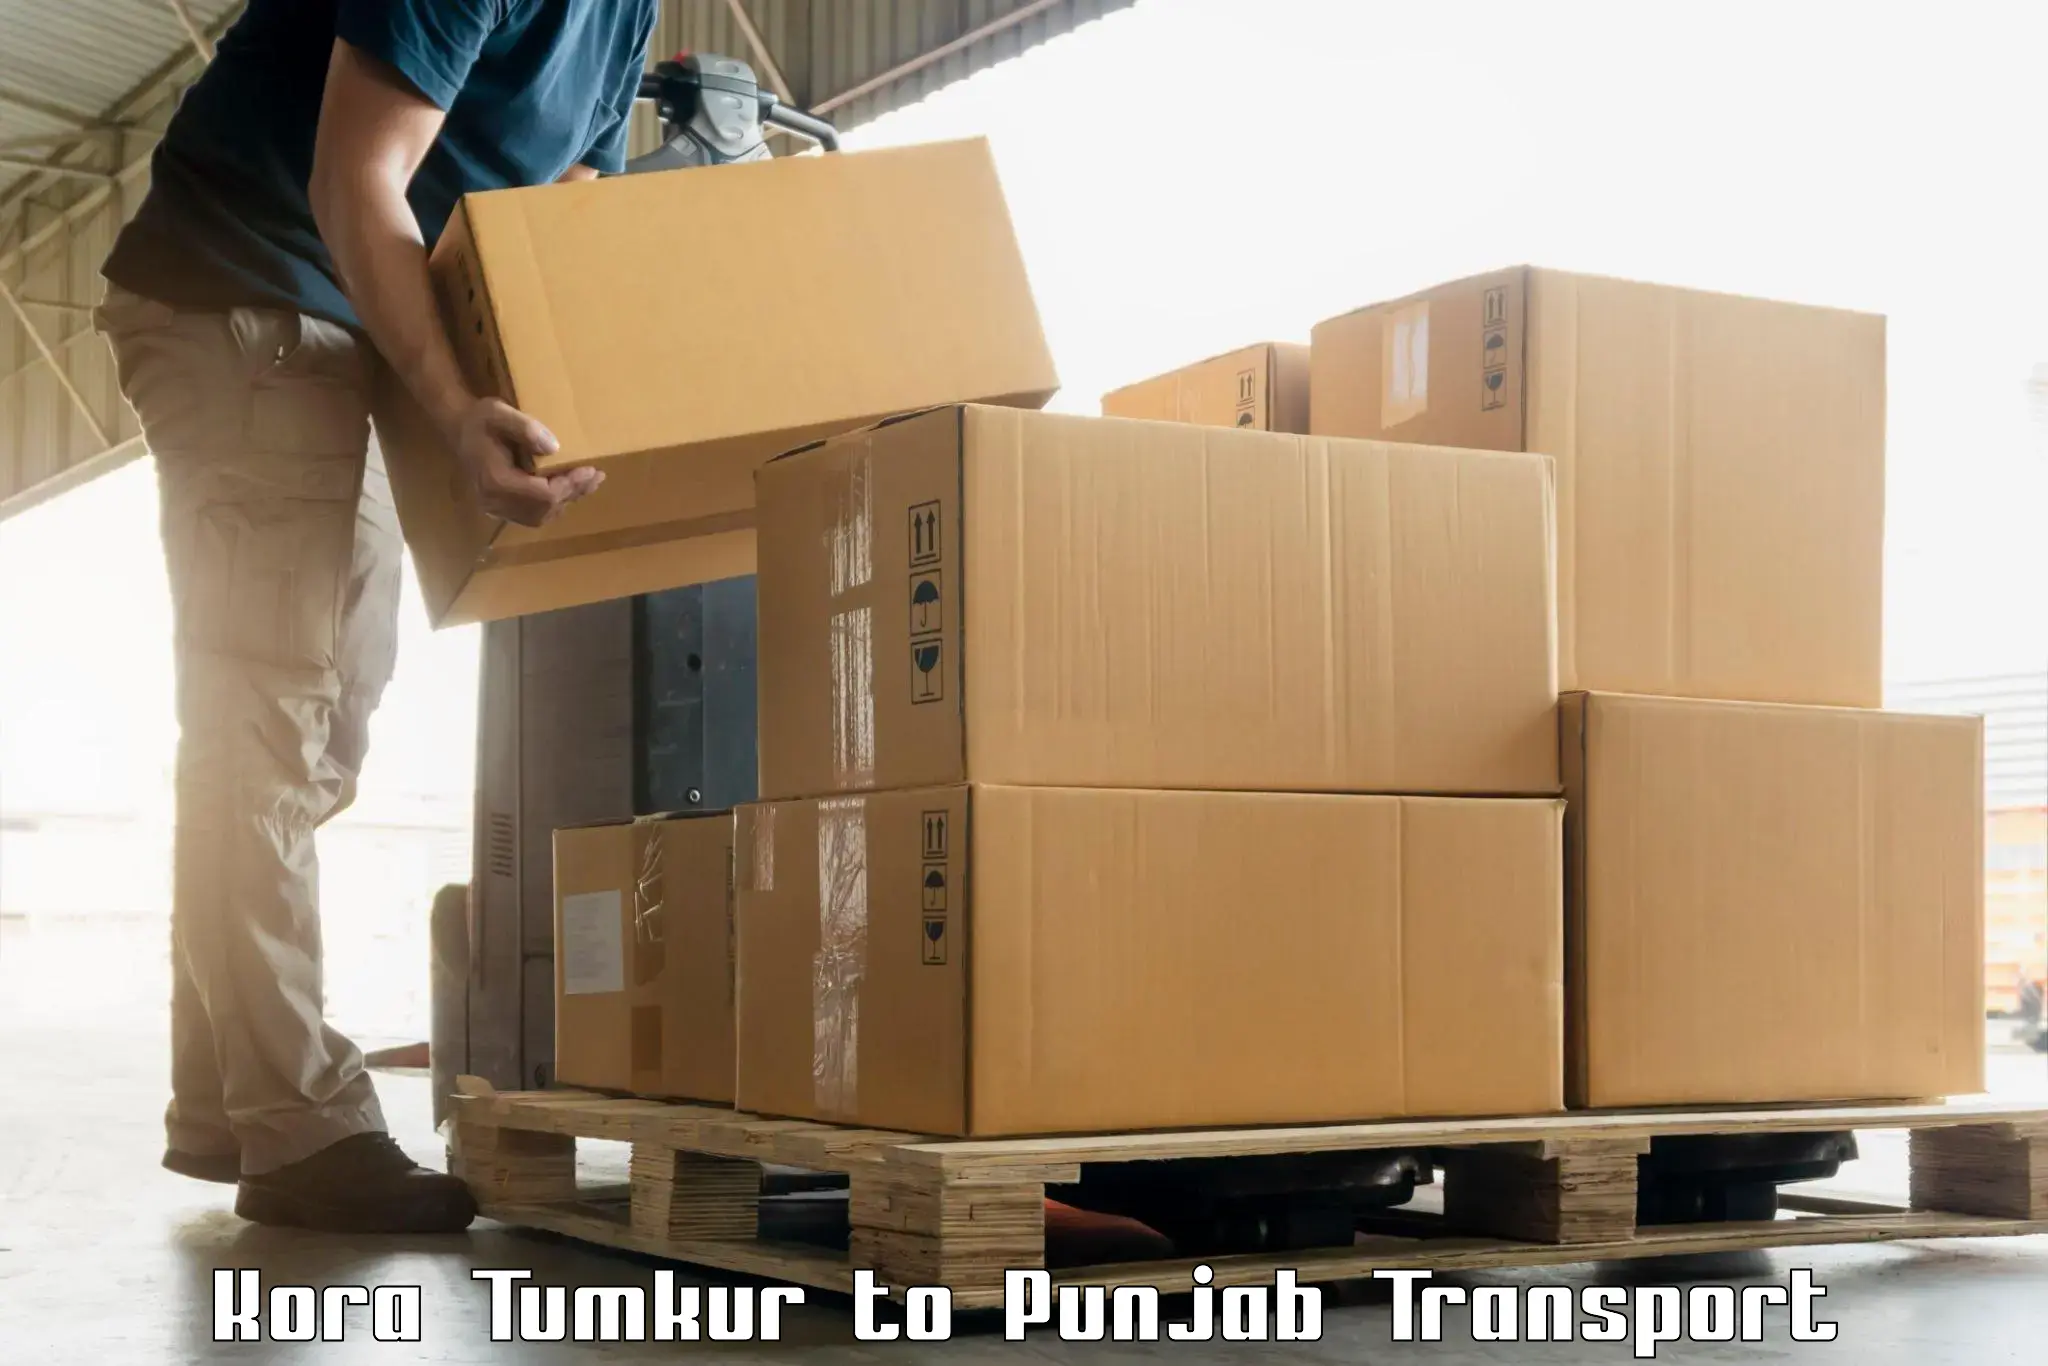 Container transport service in Kora Tumkur to Phillaur